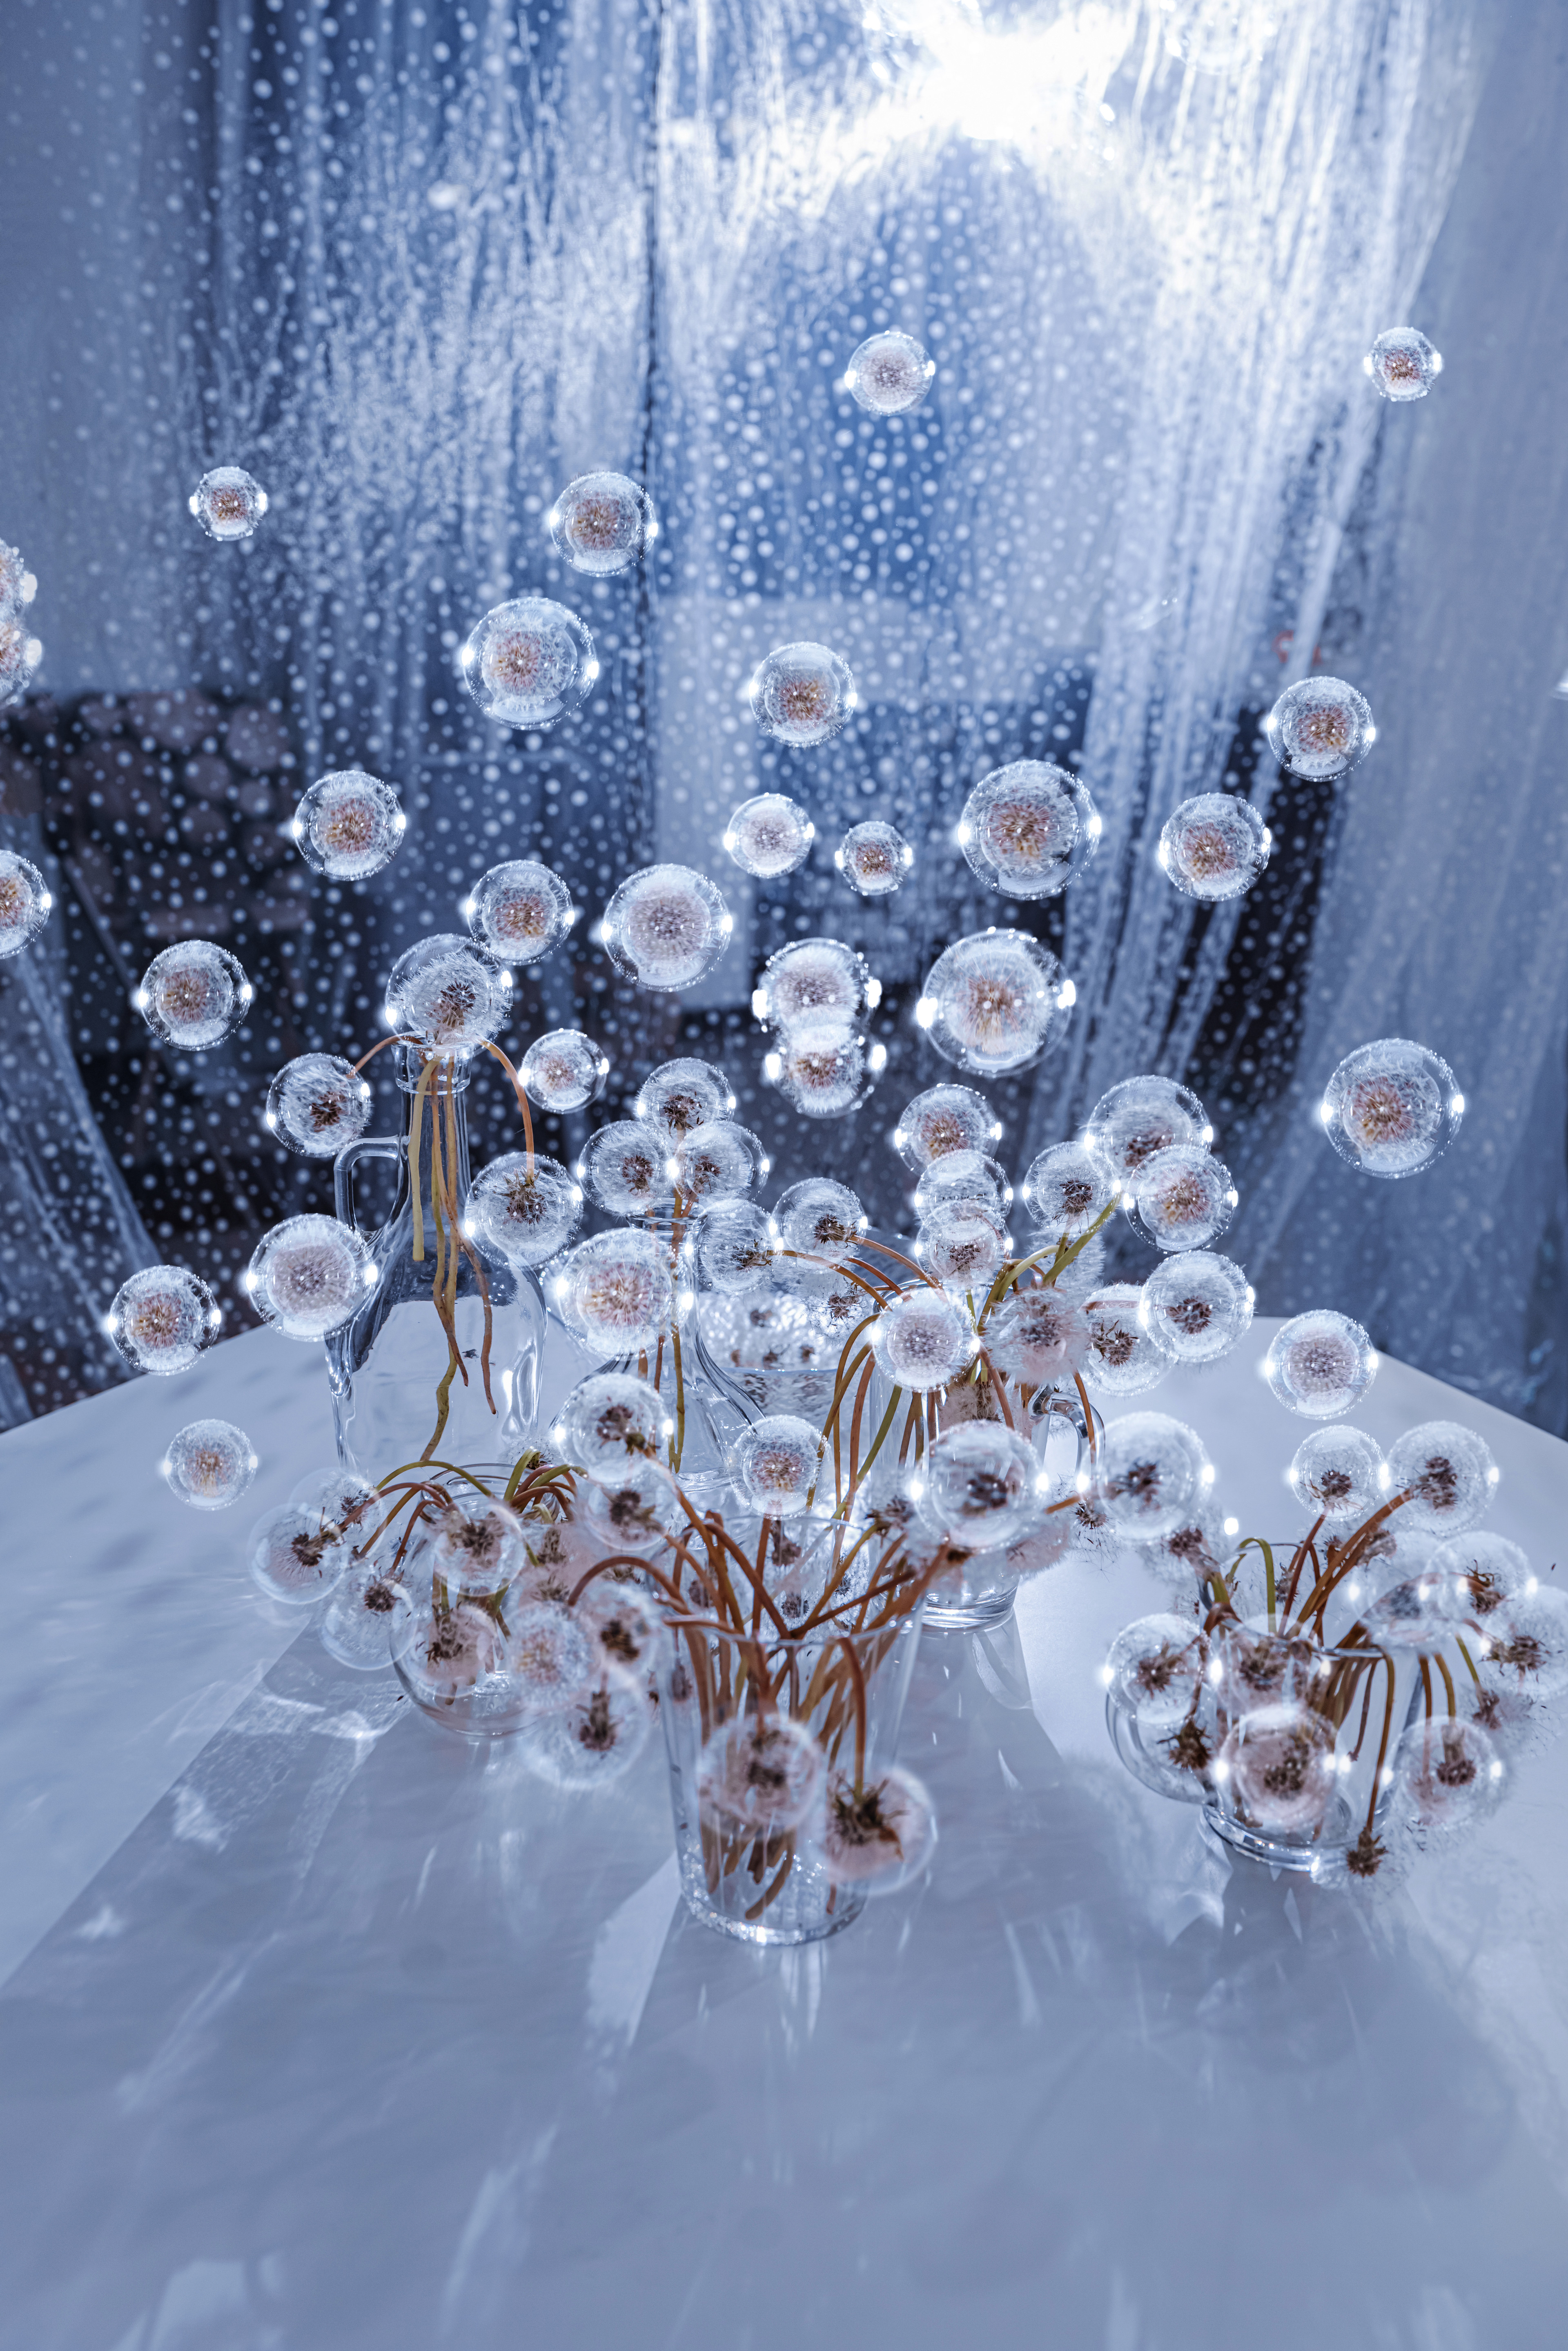 Dandelions and bubbles, composition 3